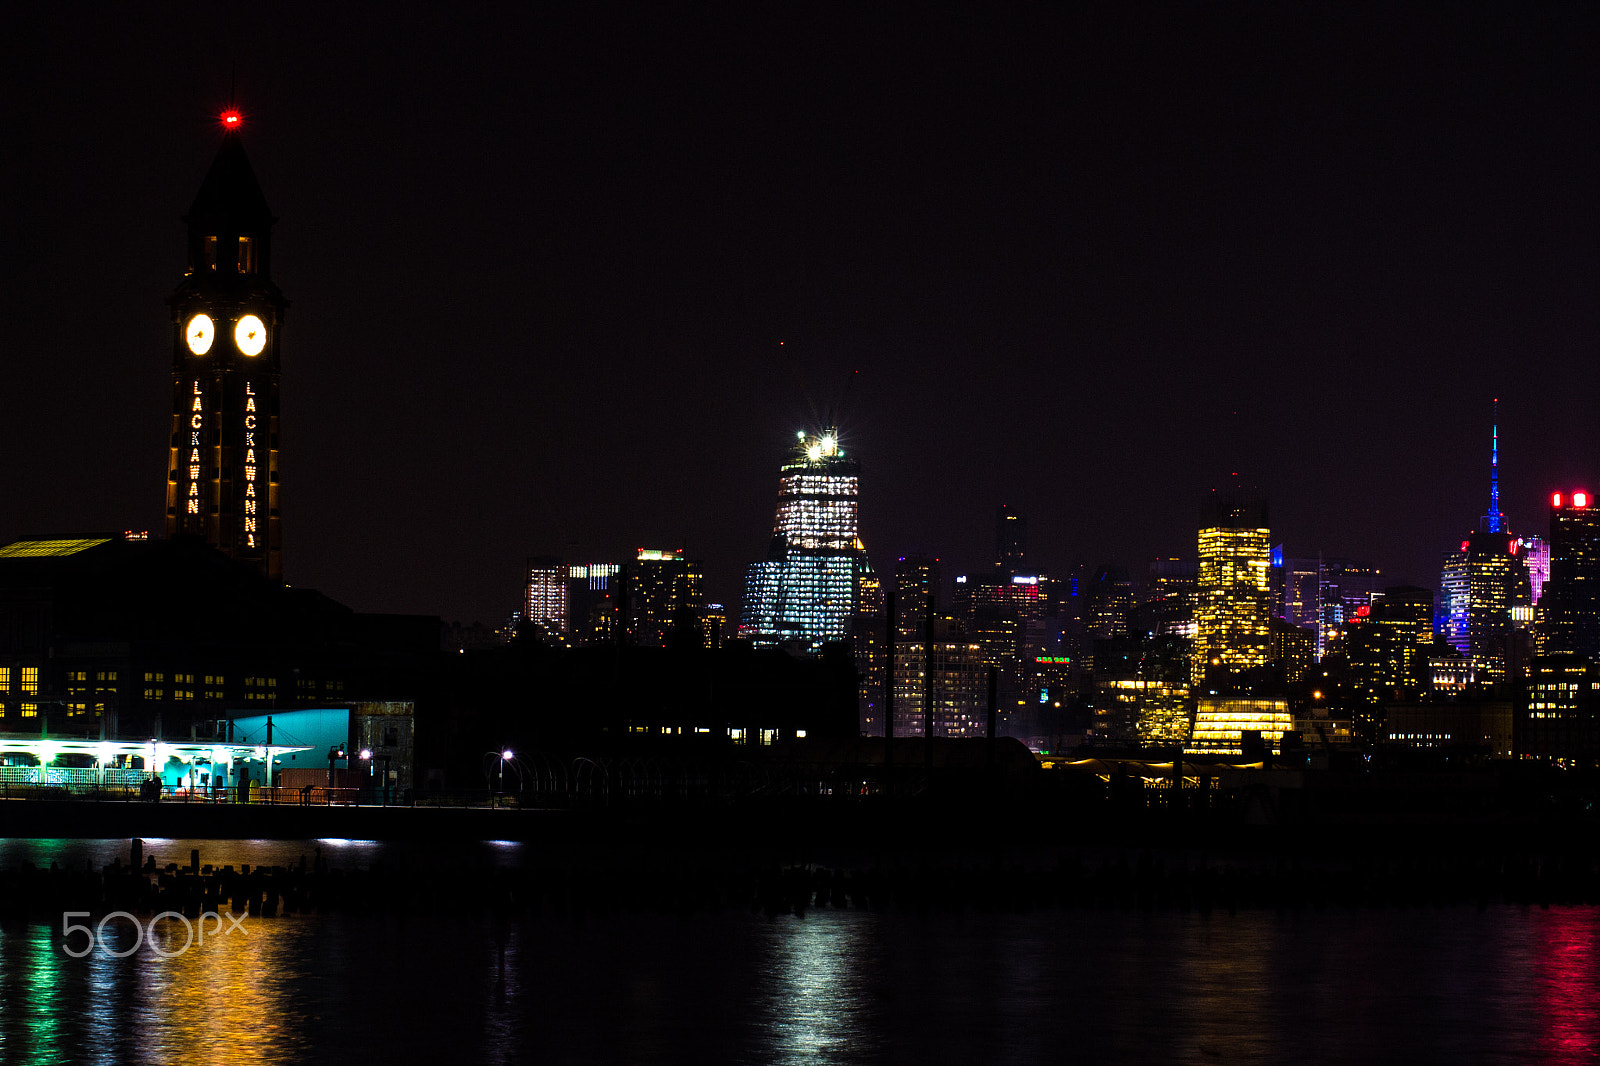 Nikon D3100 sample photo. Hoboken train terminal and nyc at night photography